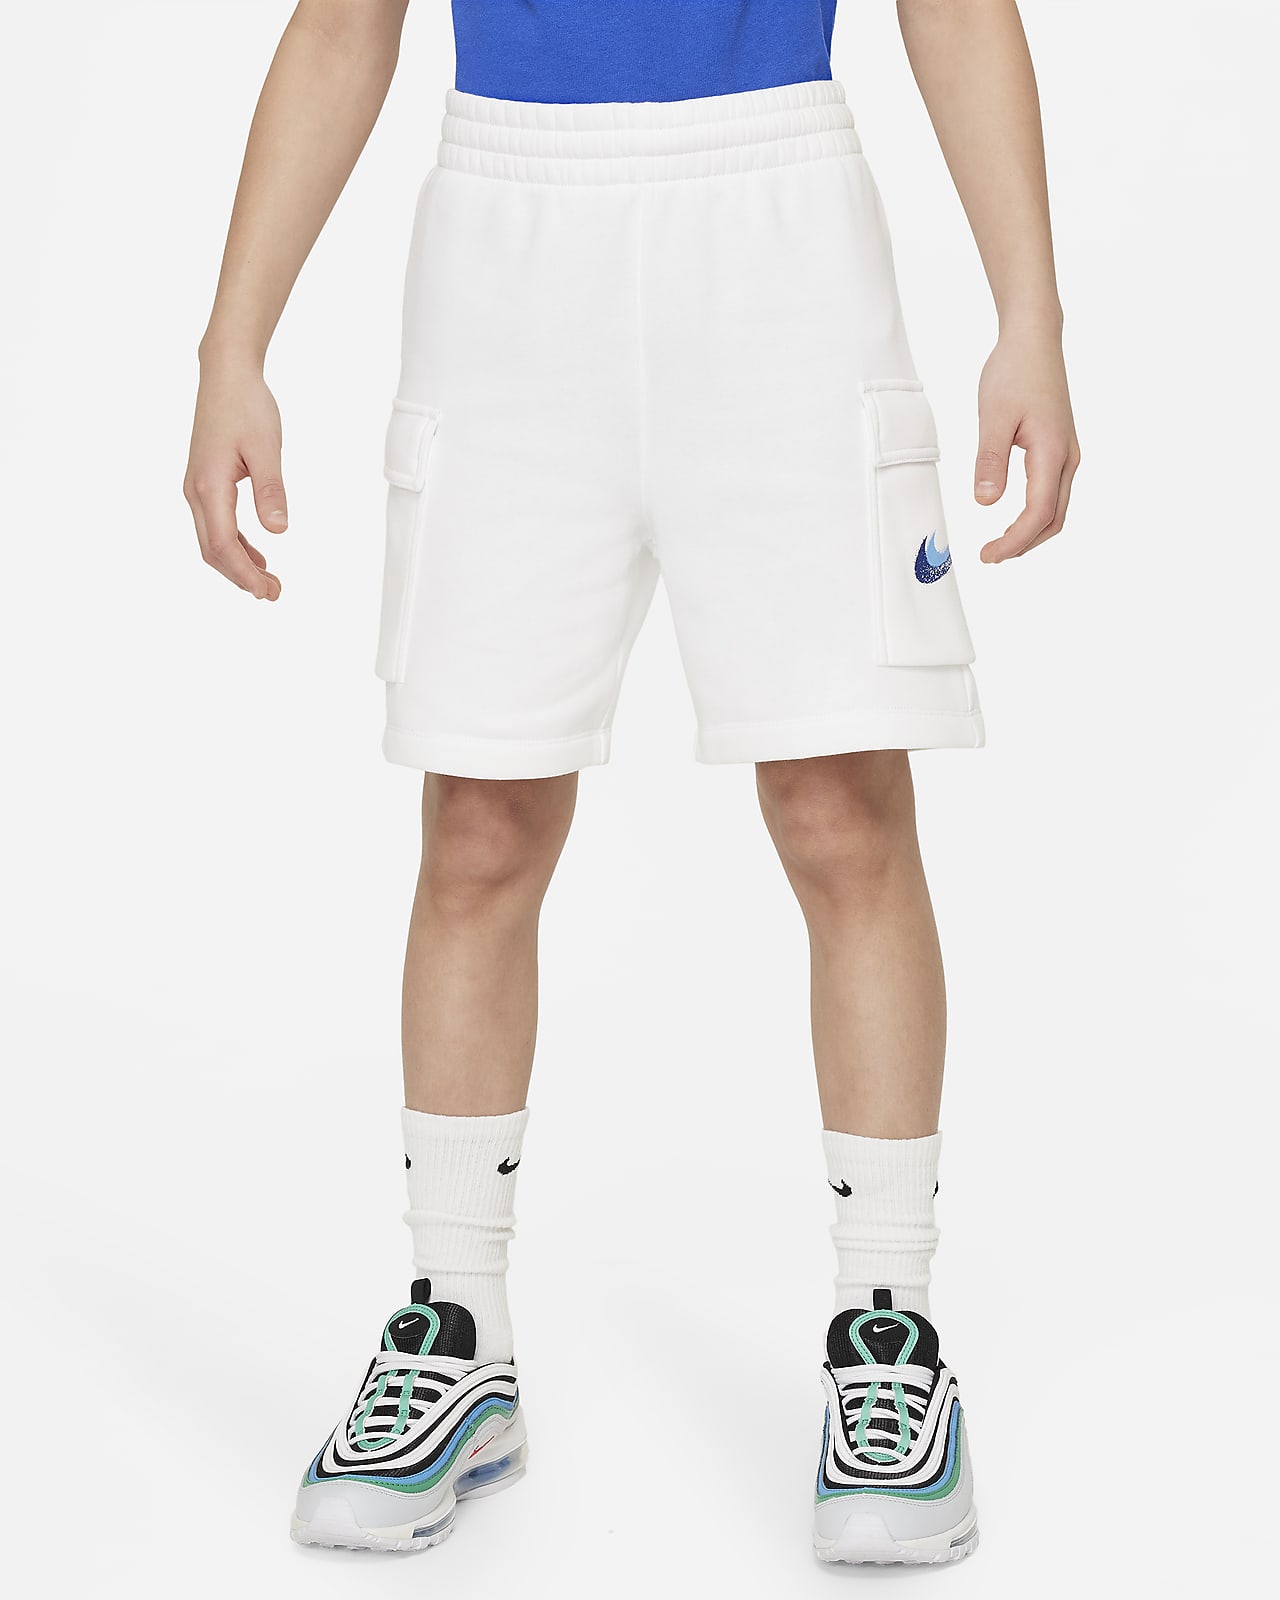 Flísové kraťasy Nike Sportswear Standard Issue pro větší děti (chlapce)